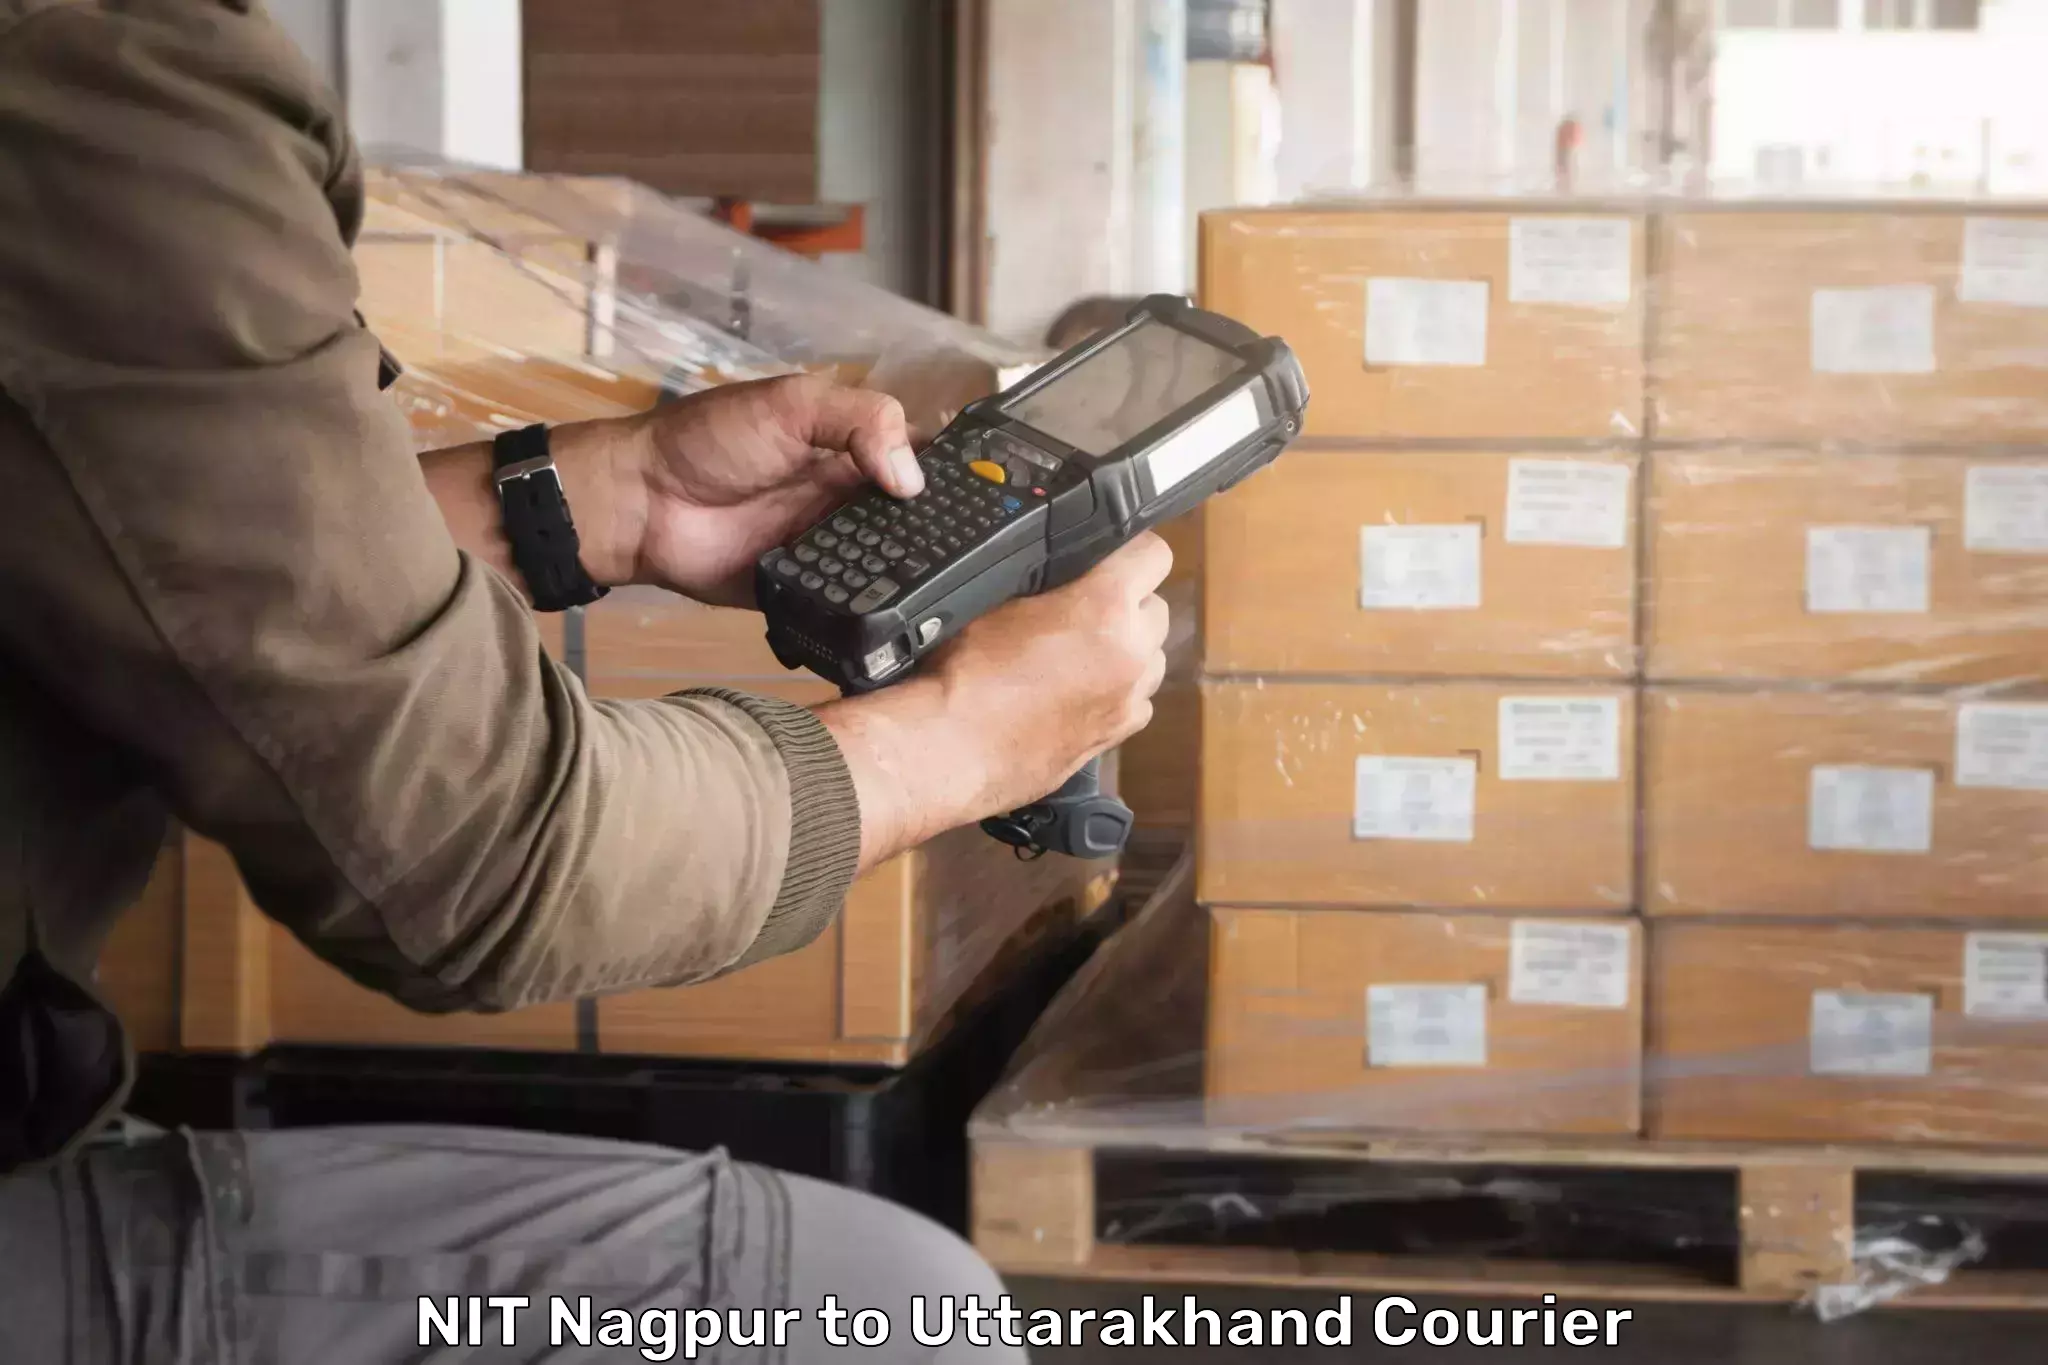 Custom courier packaging NIT Nagpur to IIT Roorkee